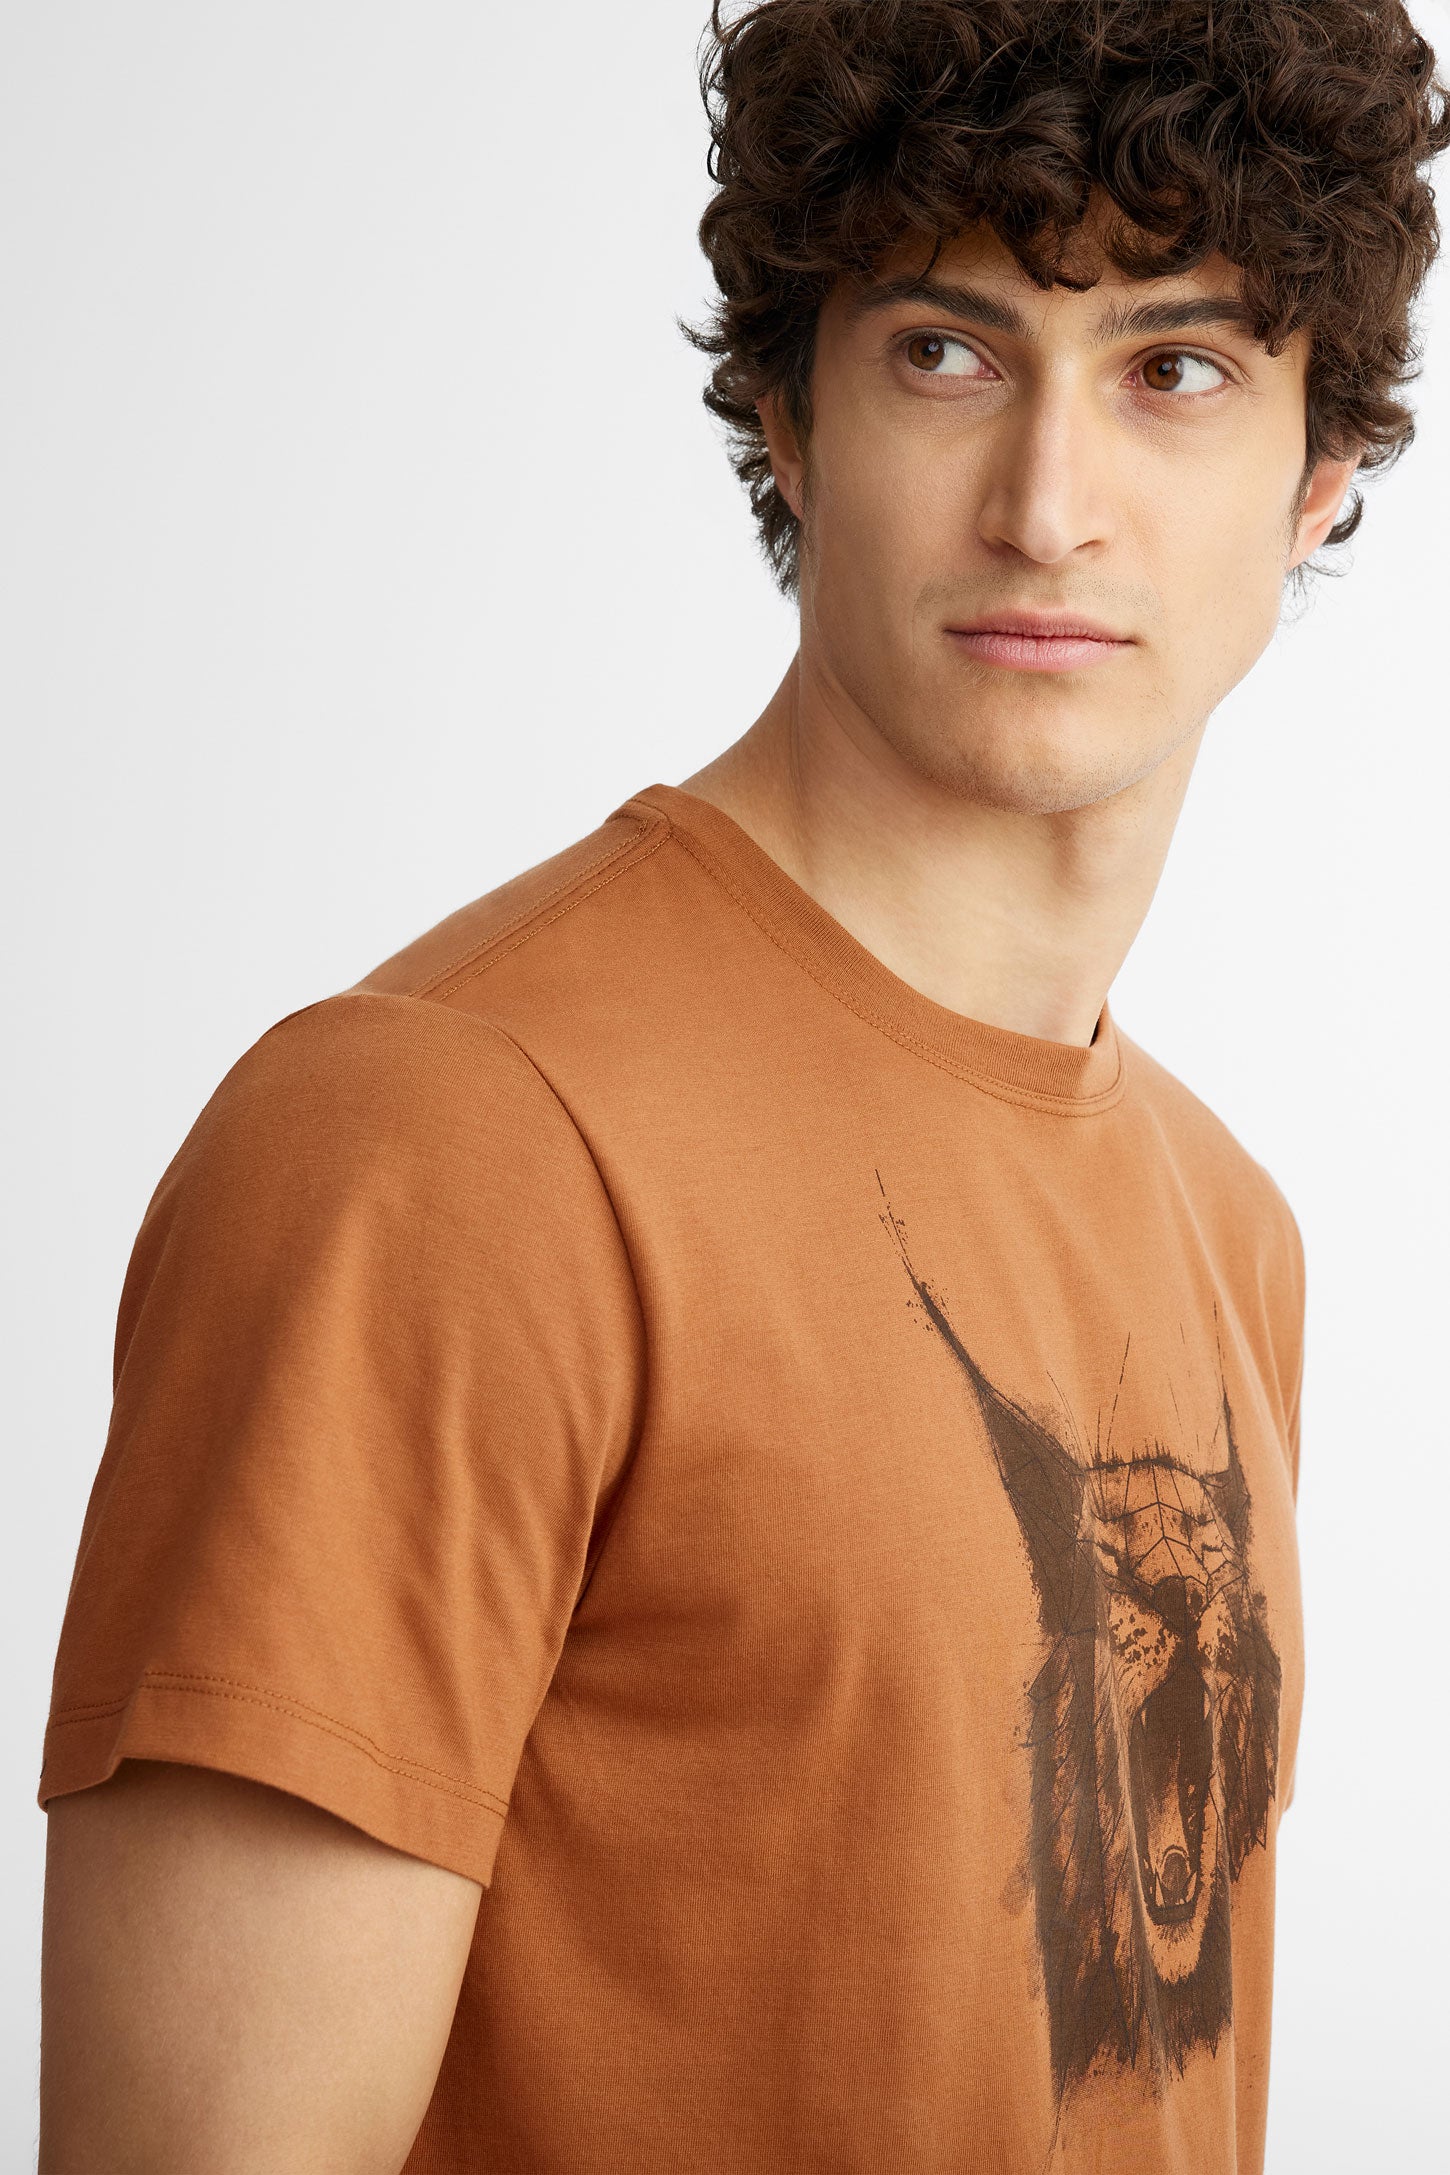 T-shirt col rond coton bio BM, 2/50$ - Homme && BRUN